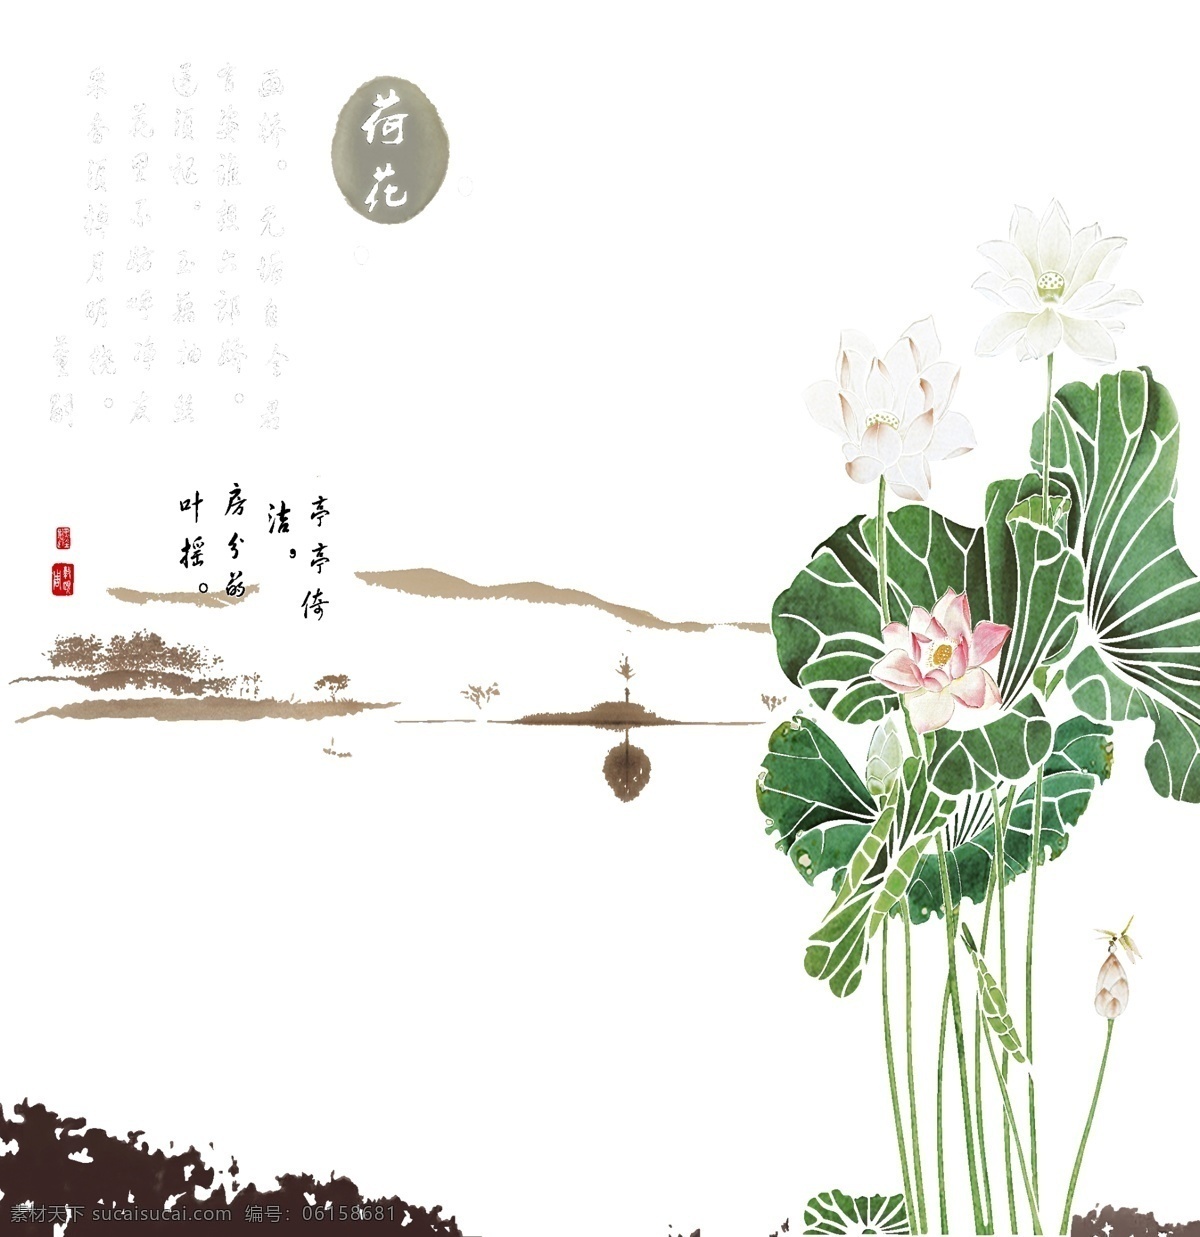 中式 风水 墨画 室内 挂画 山水画 背景 墙 3d渲染 效果图 背景墙 荷花 湖水 瓷砖 墙纸